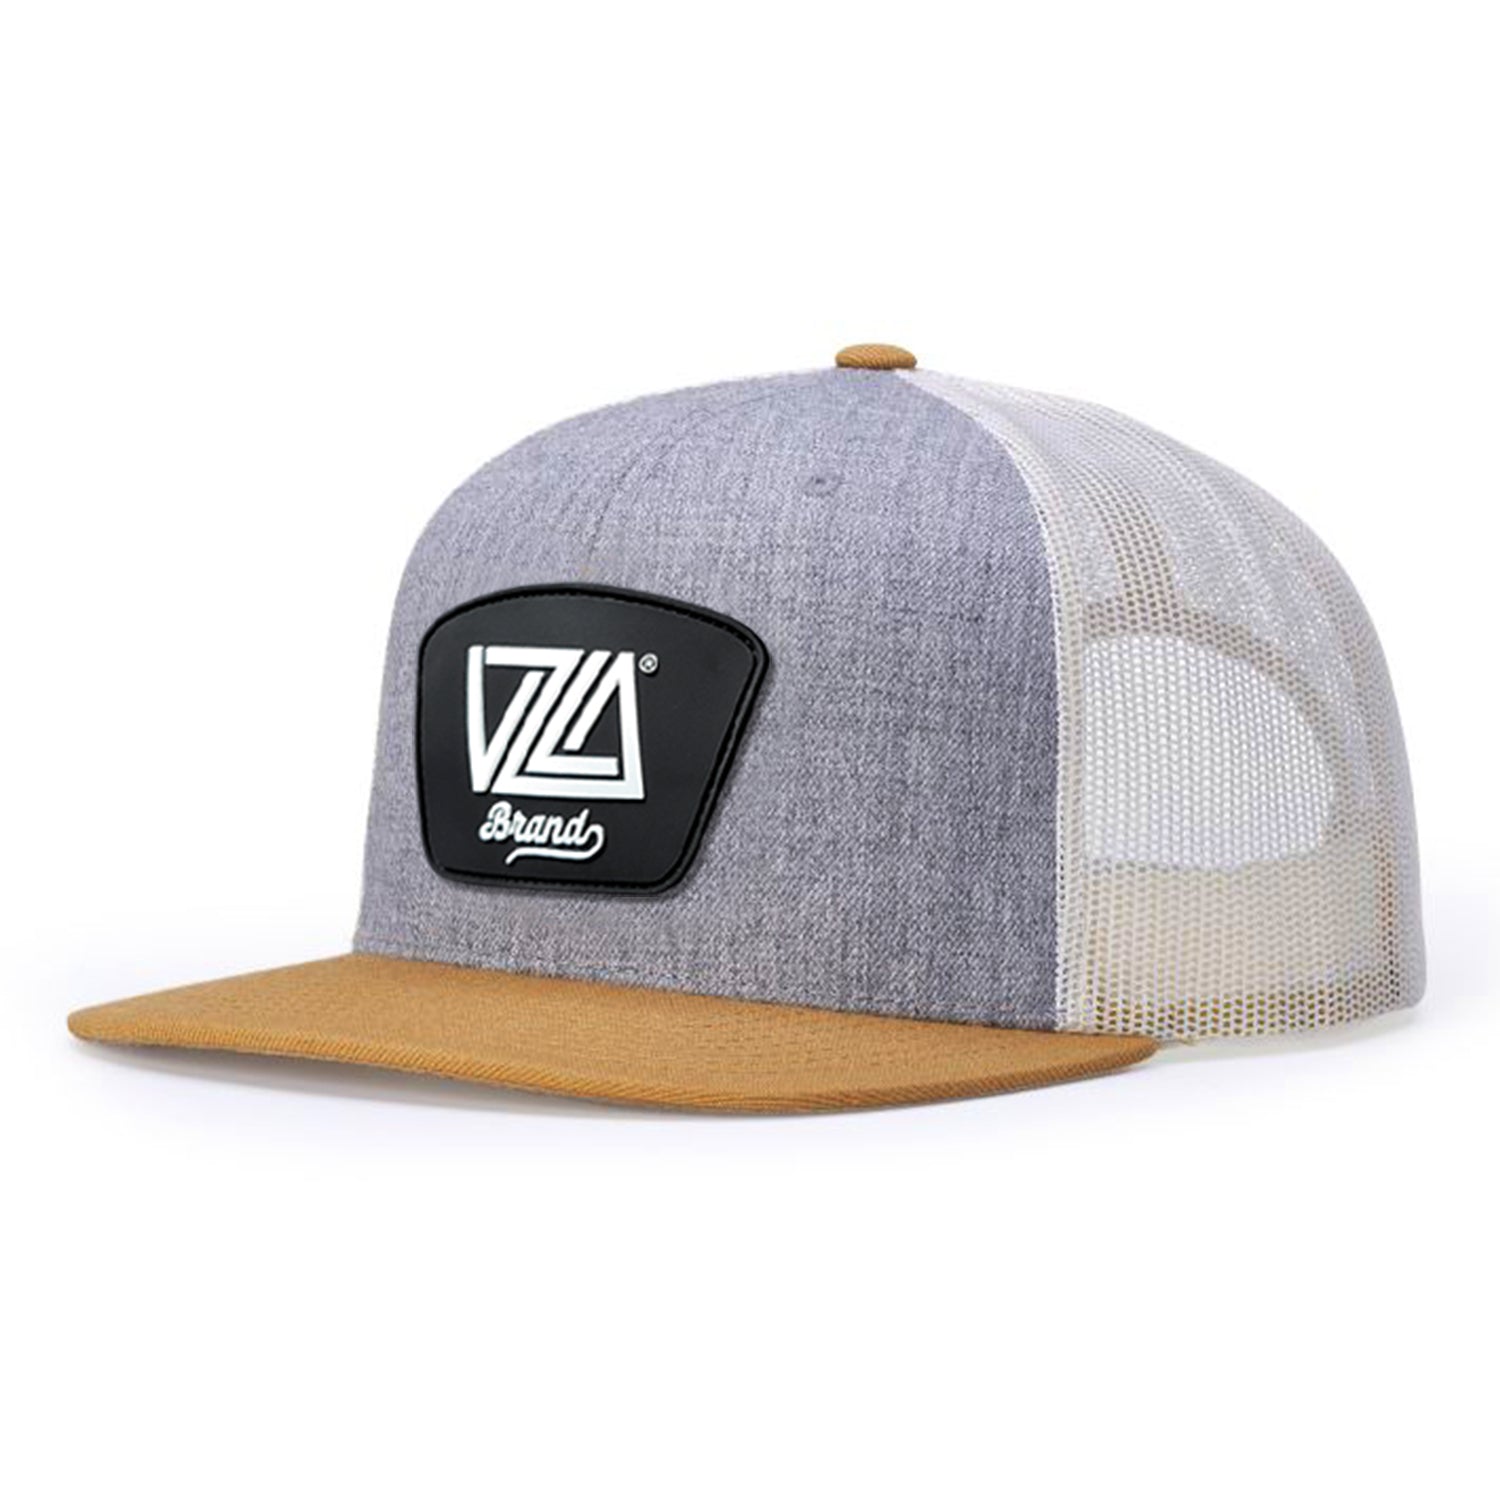 VZLA Blonde Flat Bill Trucker Hat